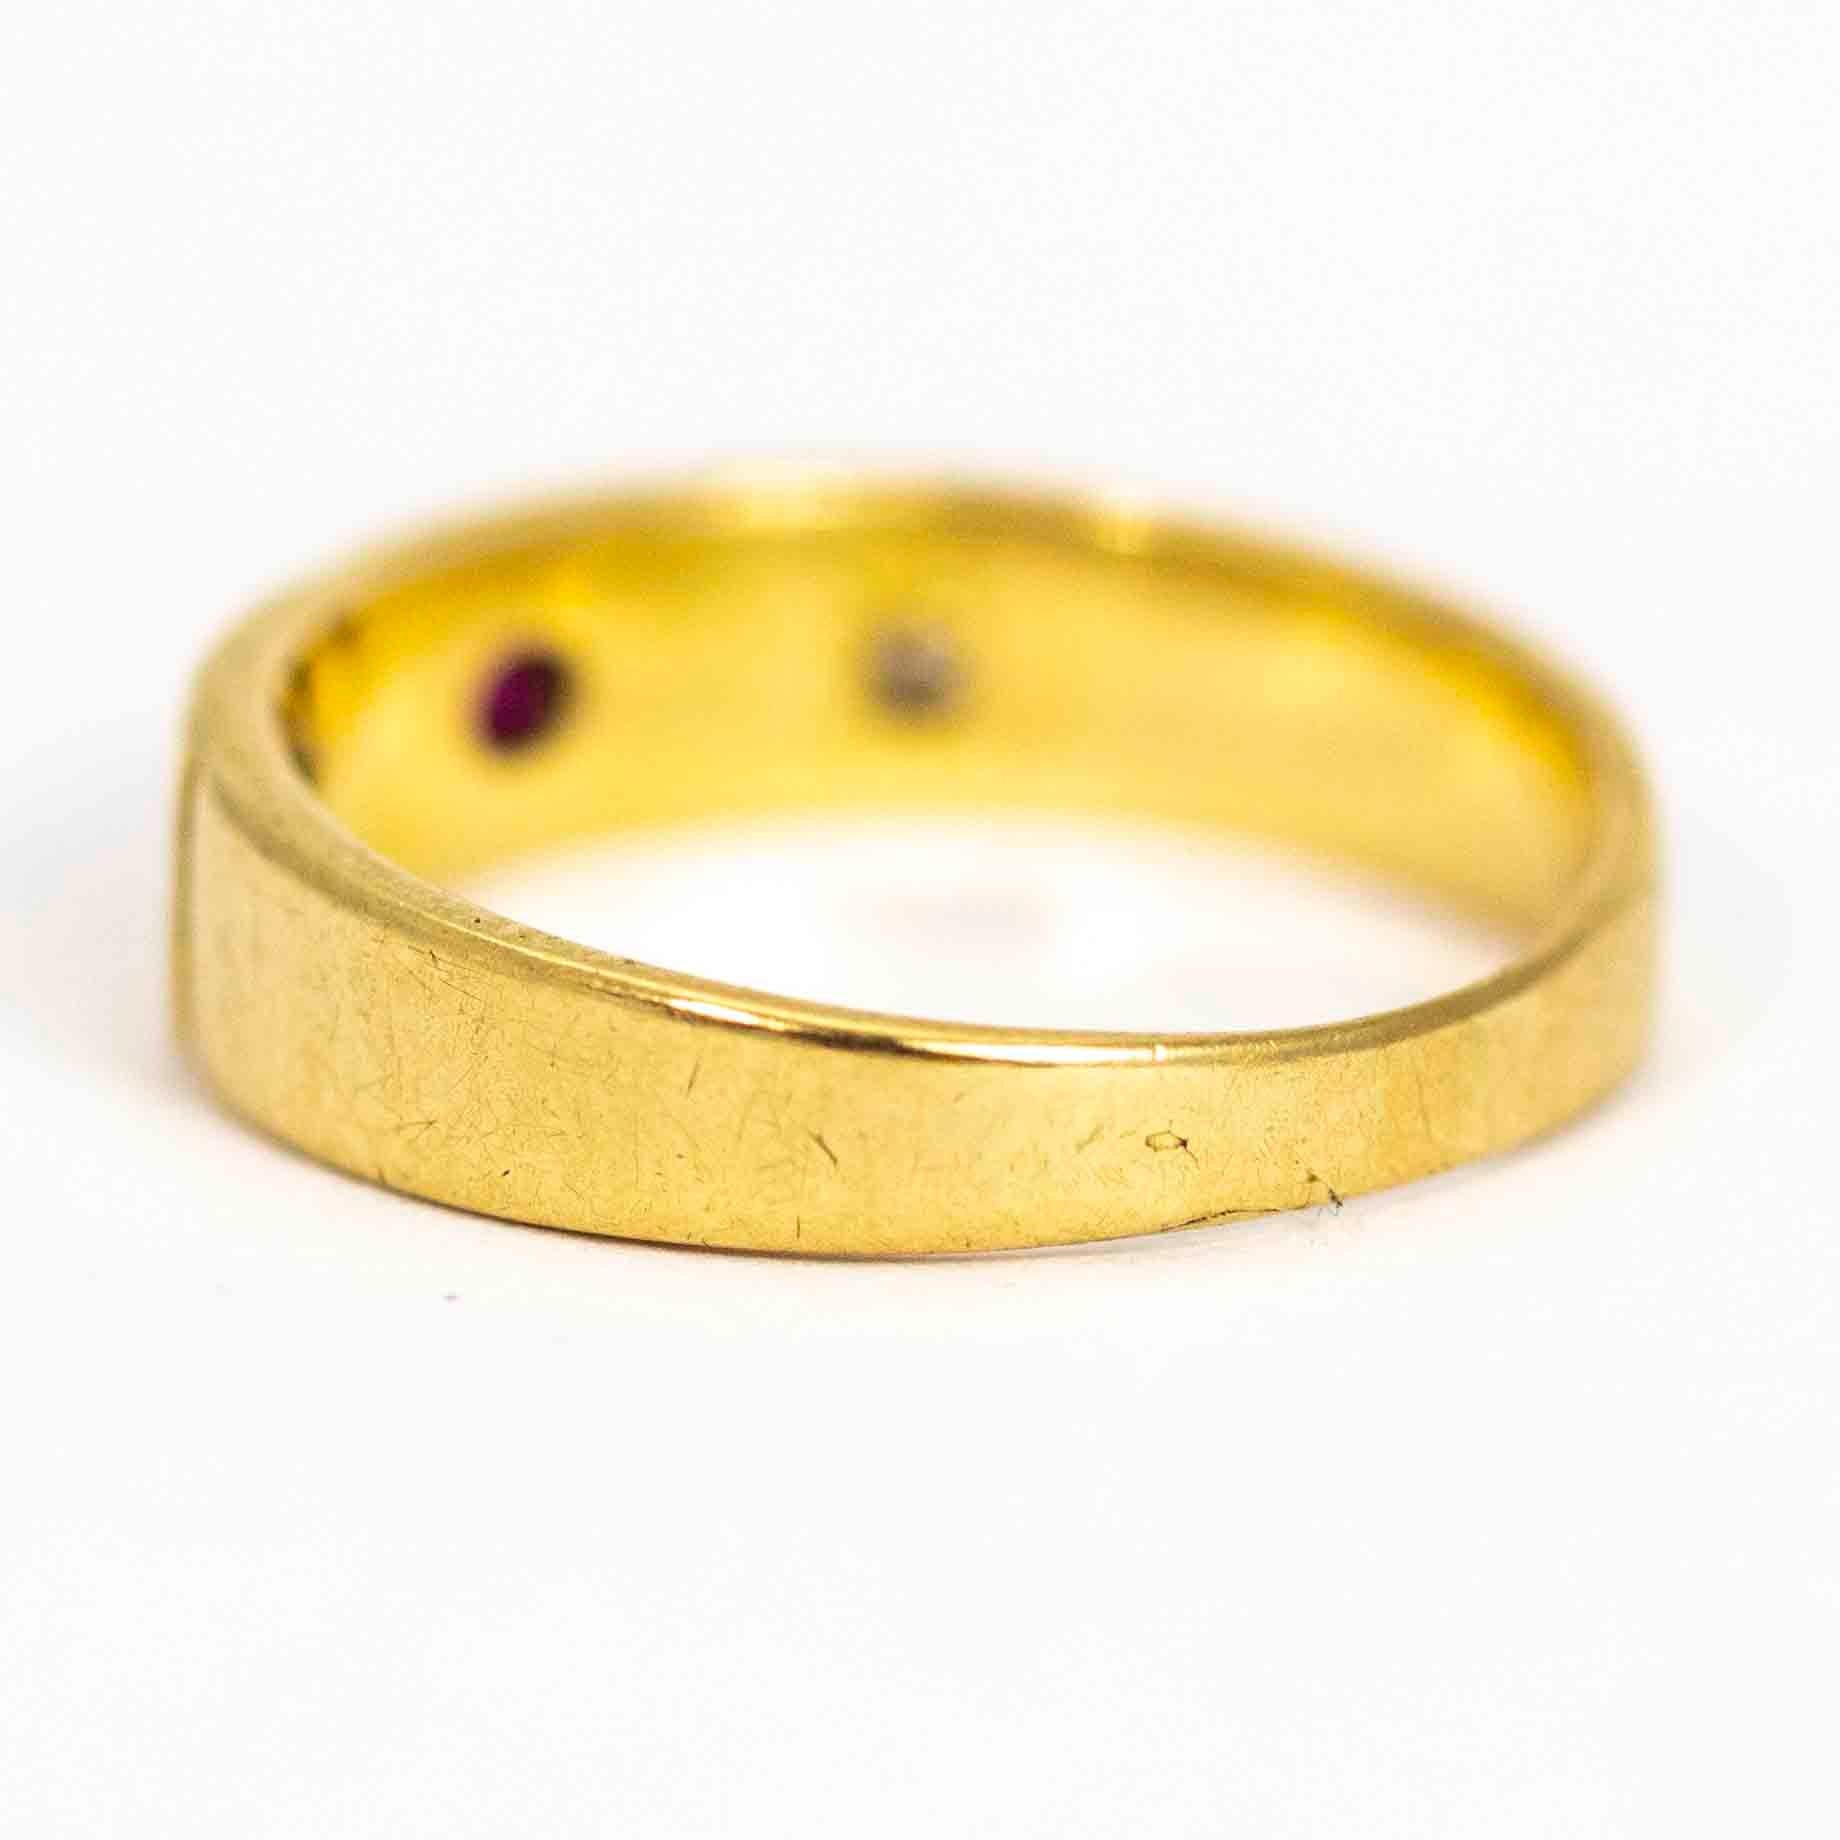 15 carat gold ring